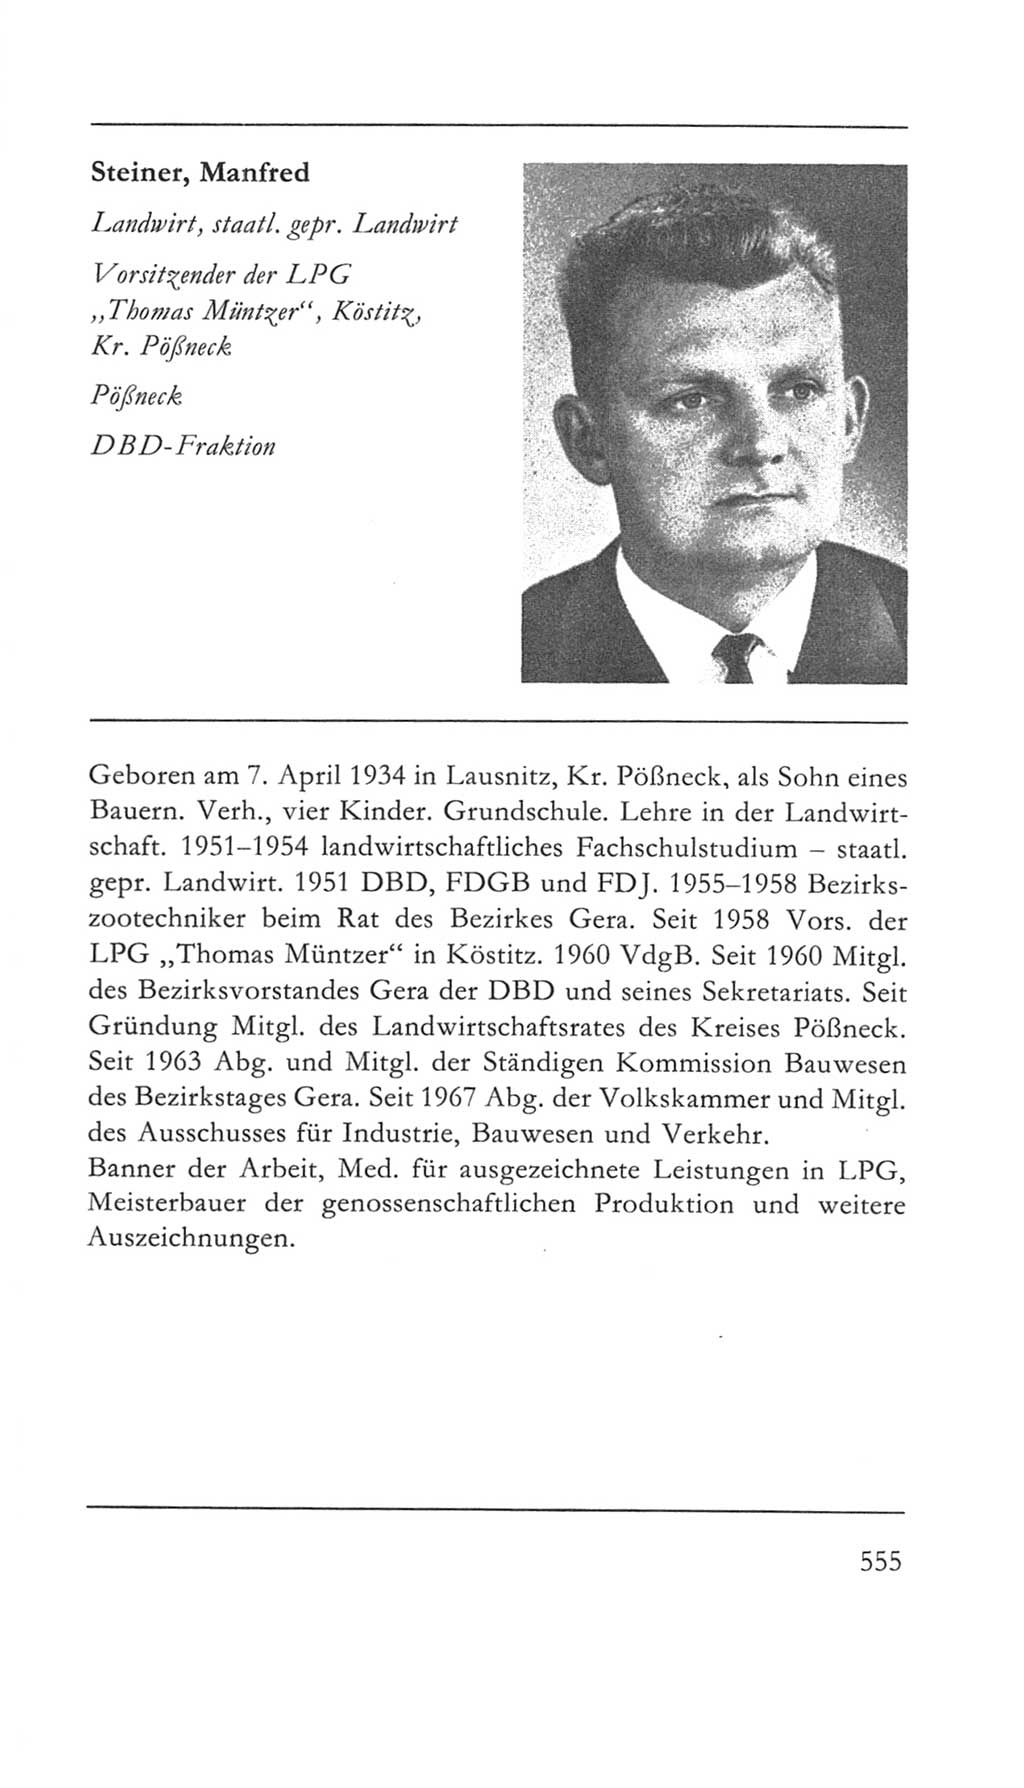 Volkskammer (VK) der Deutschen Demokratischen Republik (DDR) 5. Wahlperiode 1967-1971, Seite 555 (VK. DDR 5. WP. 1967-1971, S. 555)